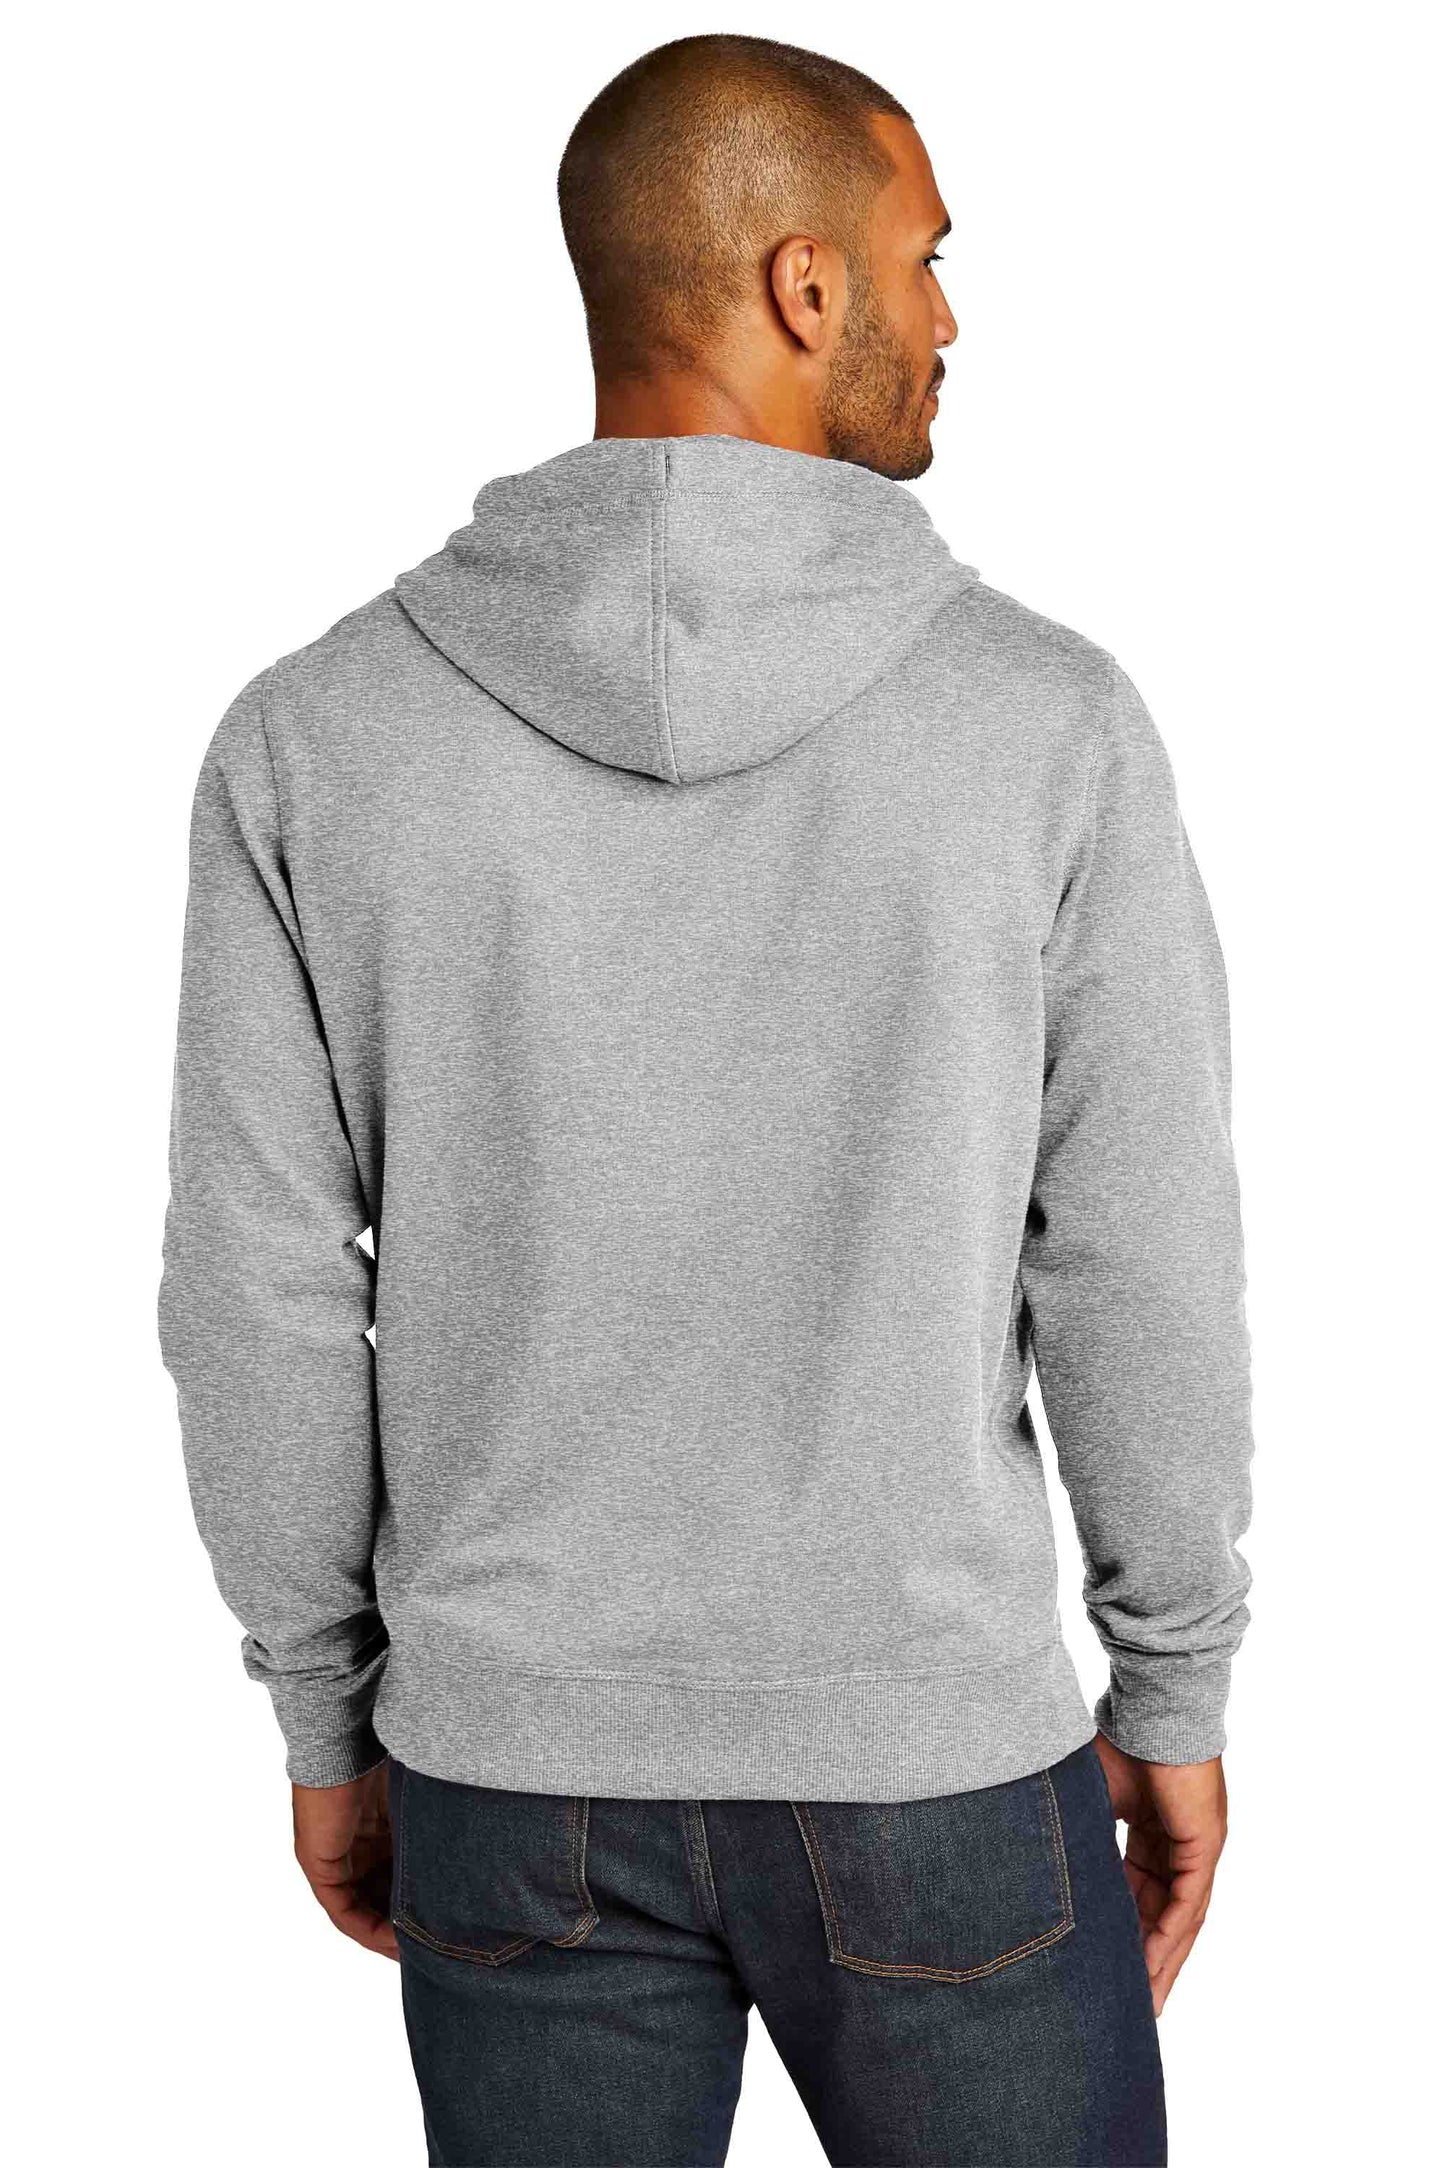 Recycled Hooded Sweatshirt